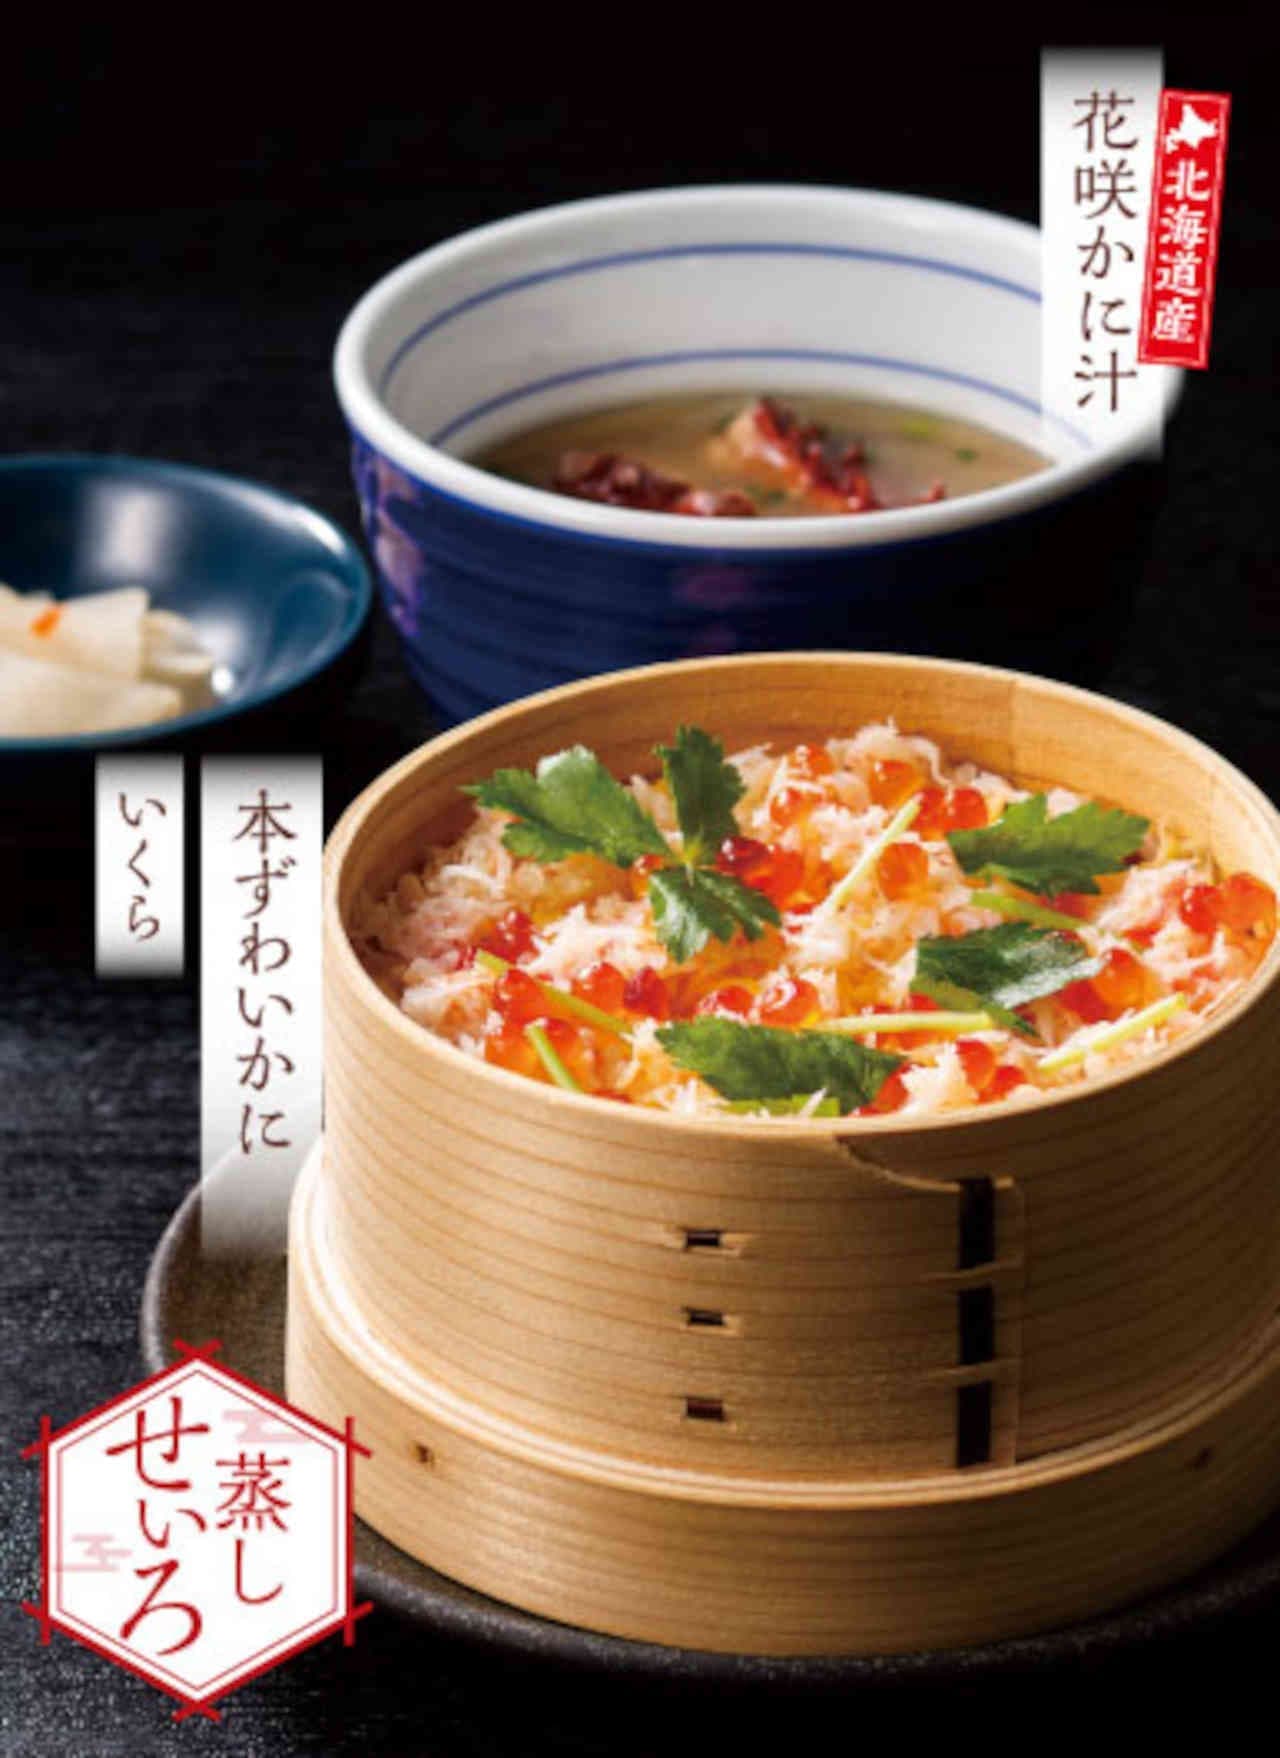 Yume-an "Honzuwai kani salmon roe seiro gohan and crab soup set" and "Honzuwai kani seafood three-course rice bowl and crab soup set